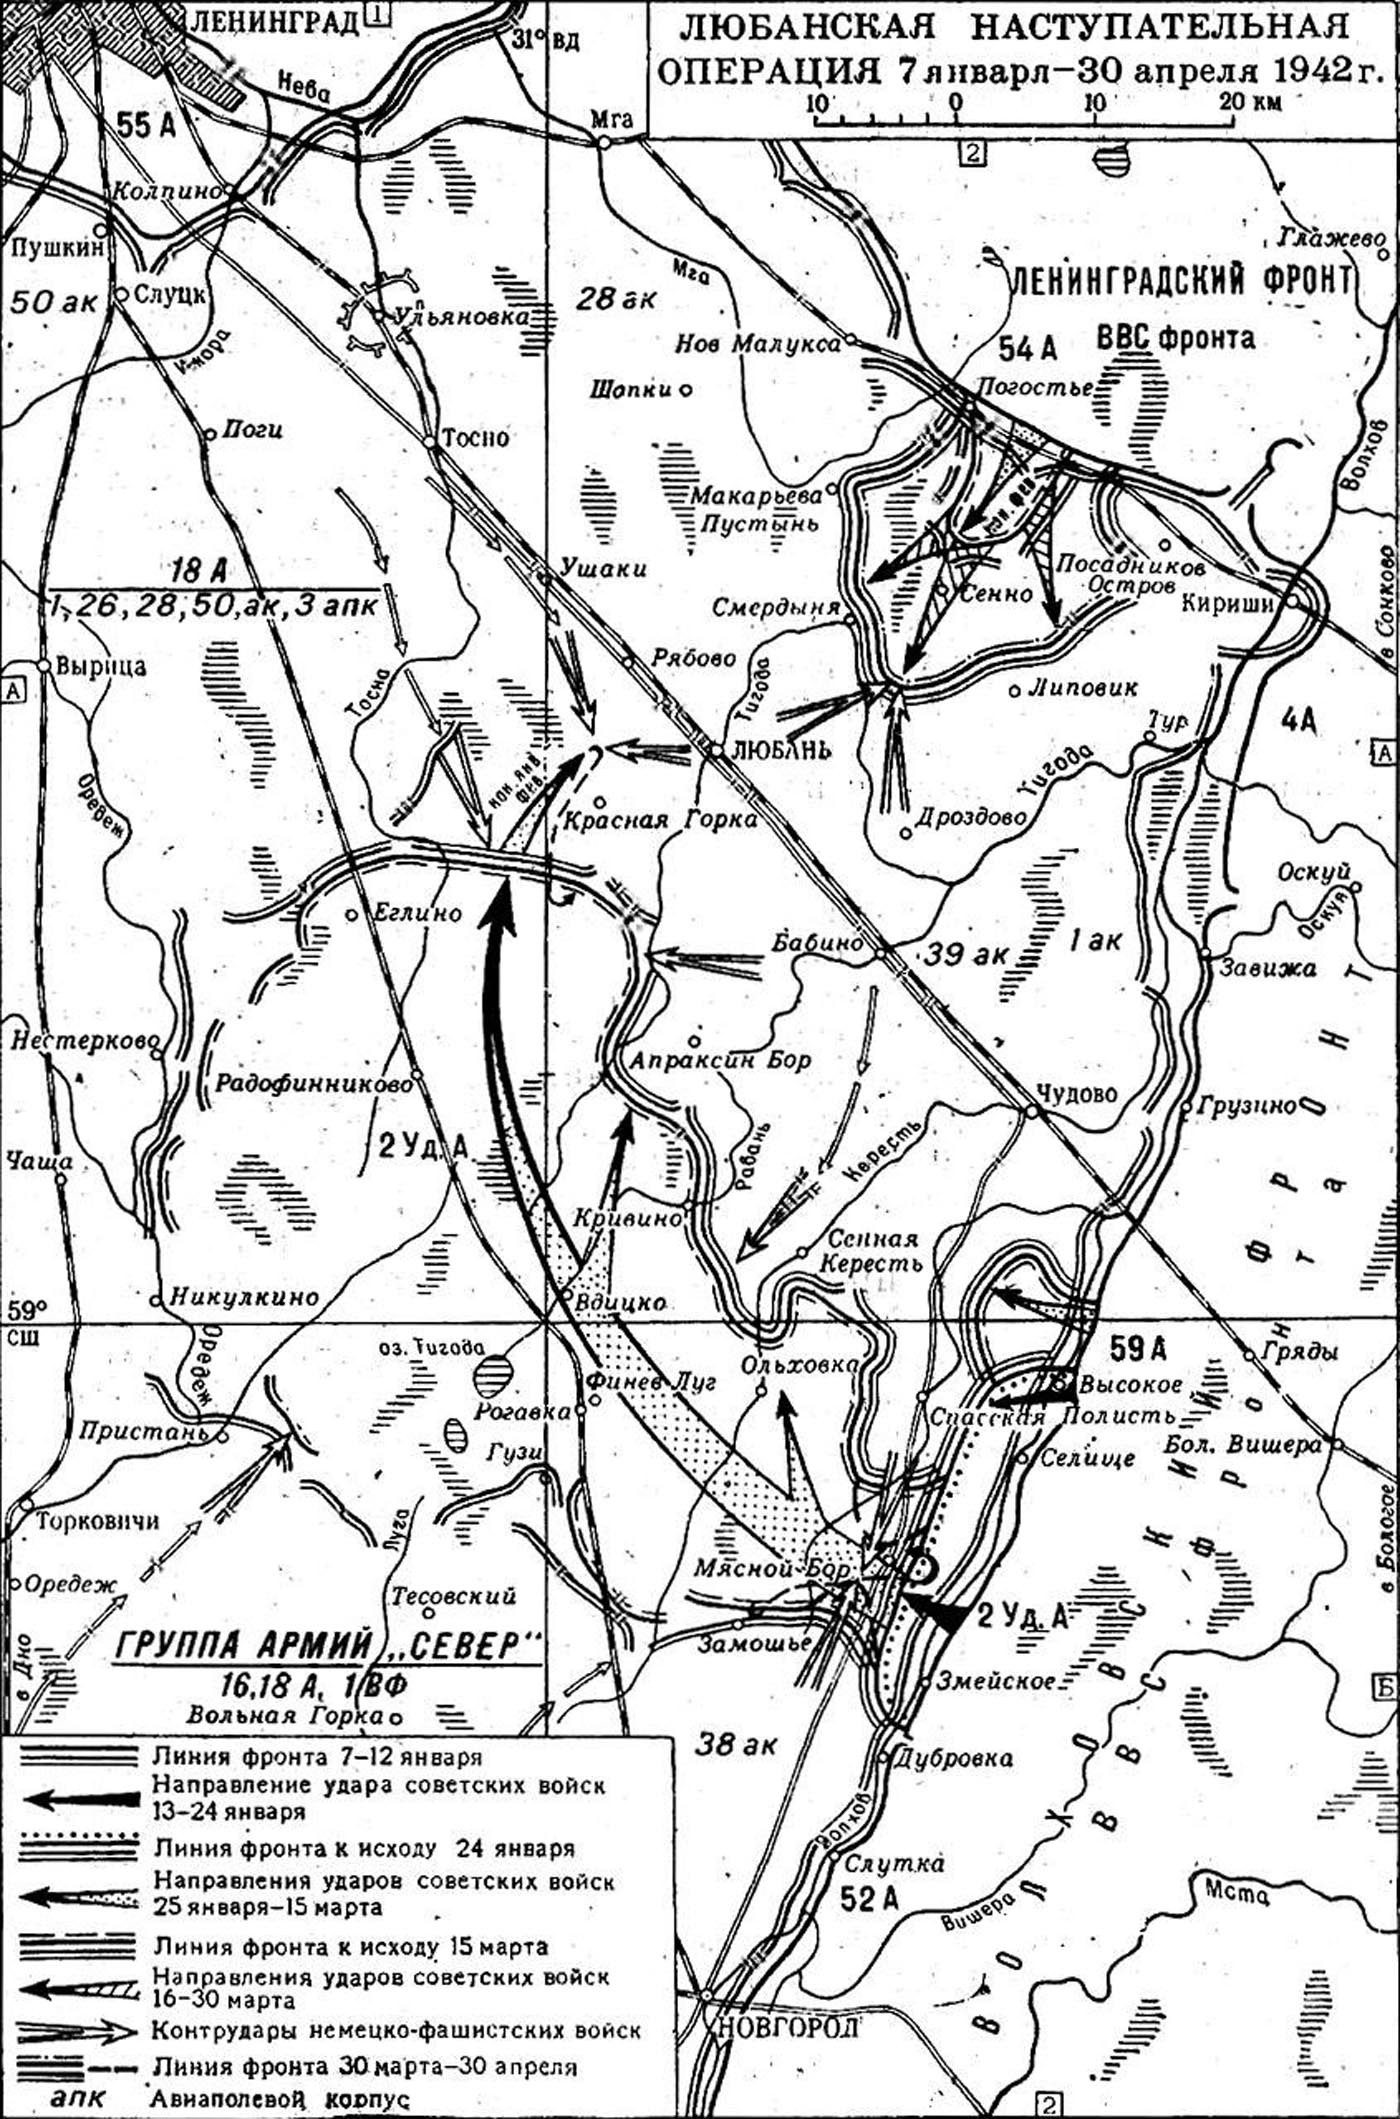 Любанская операция 1942 года. Любанская наступательная операция 1942 года карта. Любанская операция 1942 года карта. Карта Любанской операции 1942 года. Любанская наступательная операция